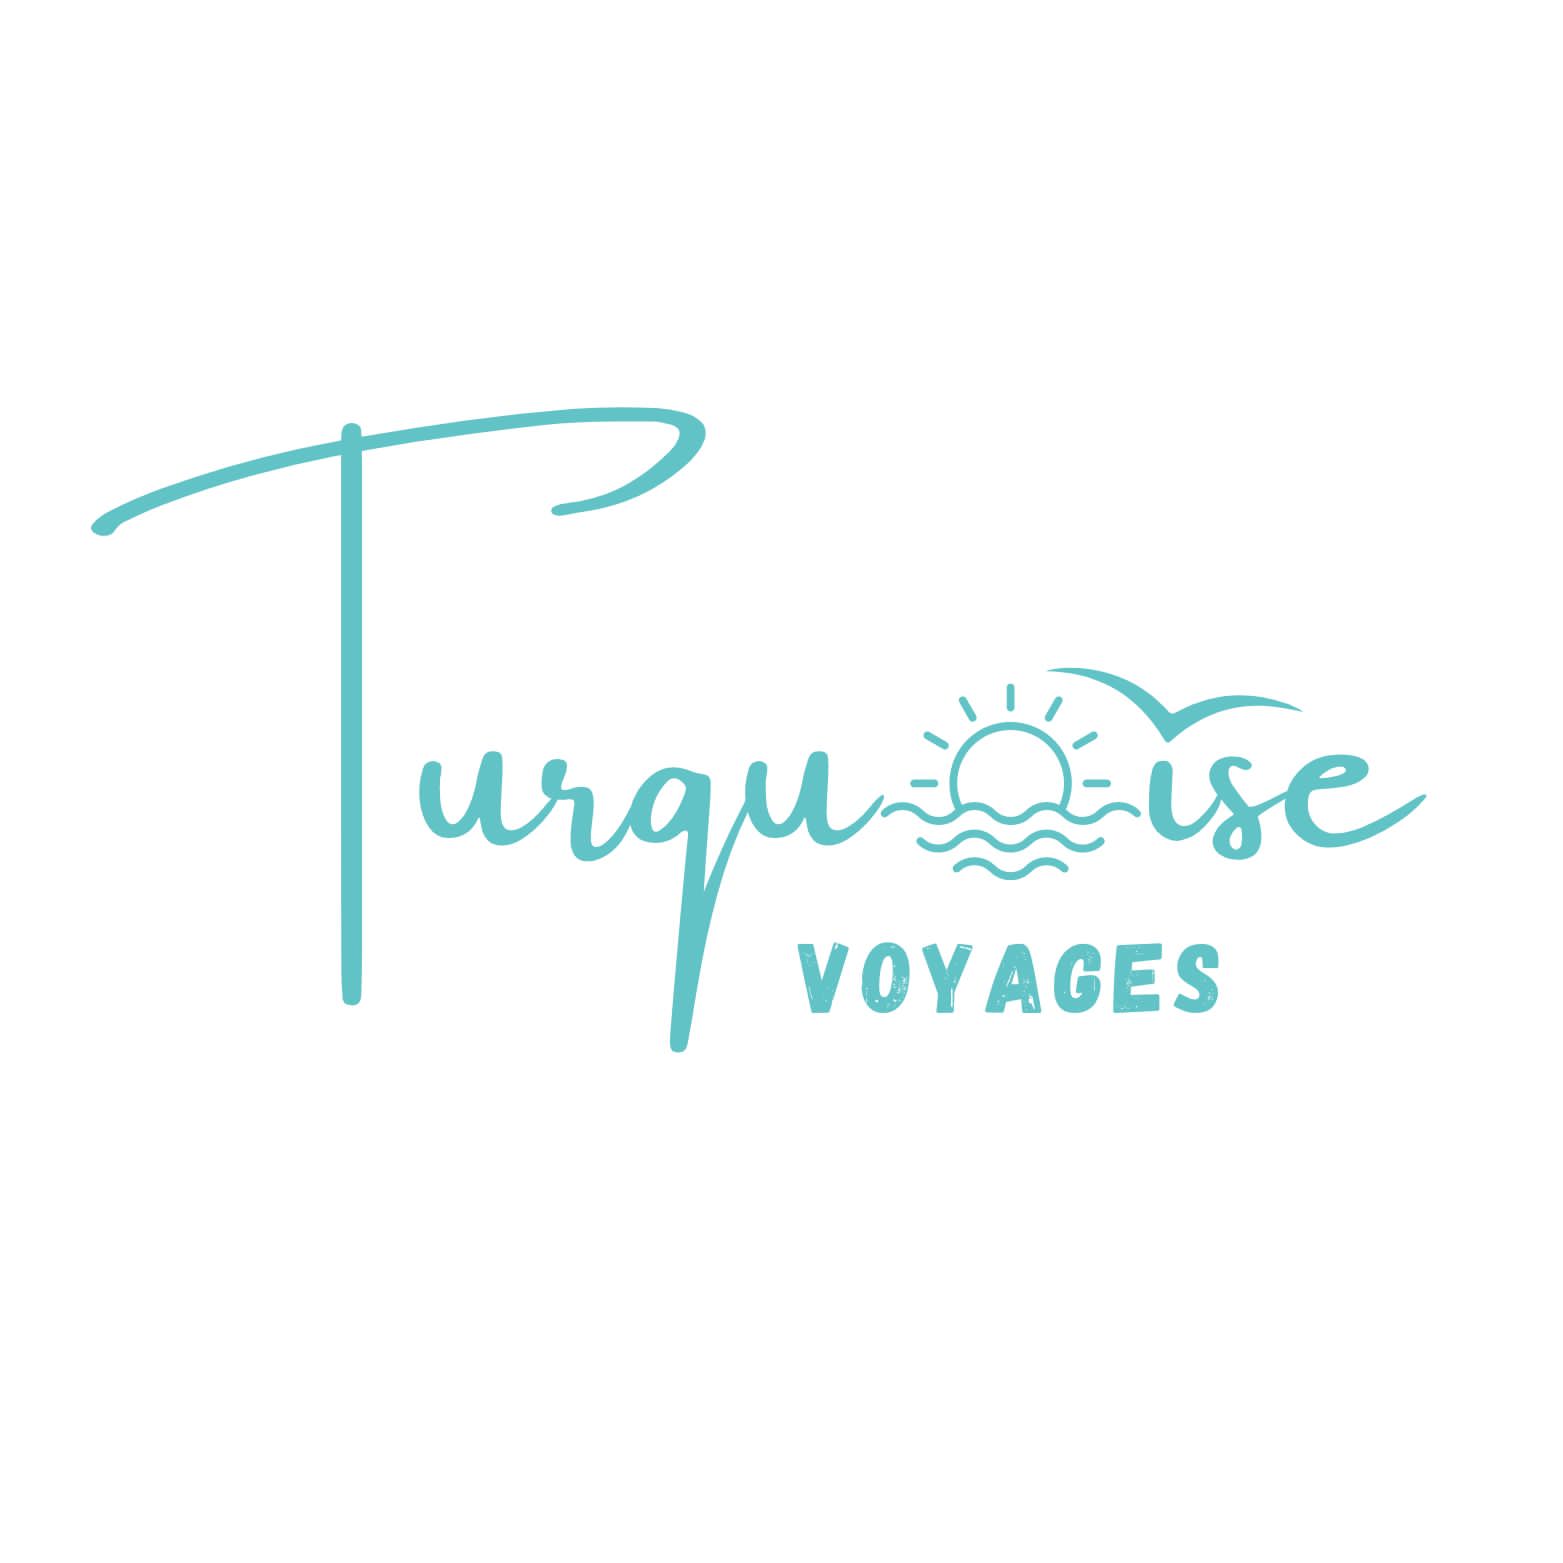 Turquoise Voyages / Samtours